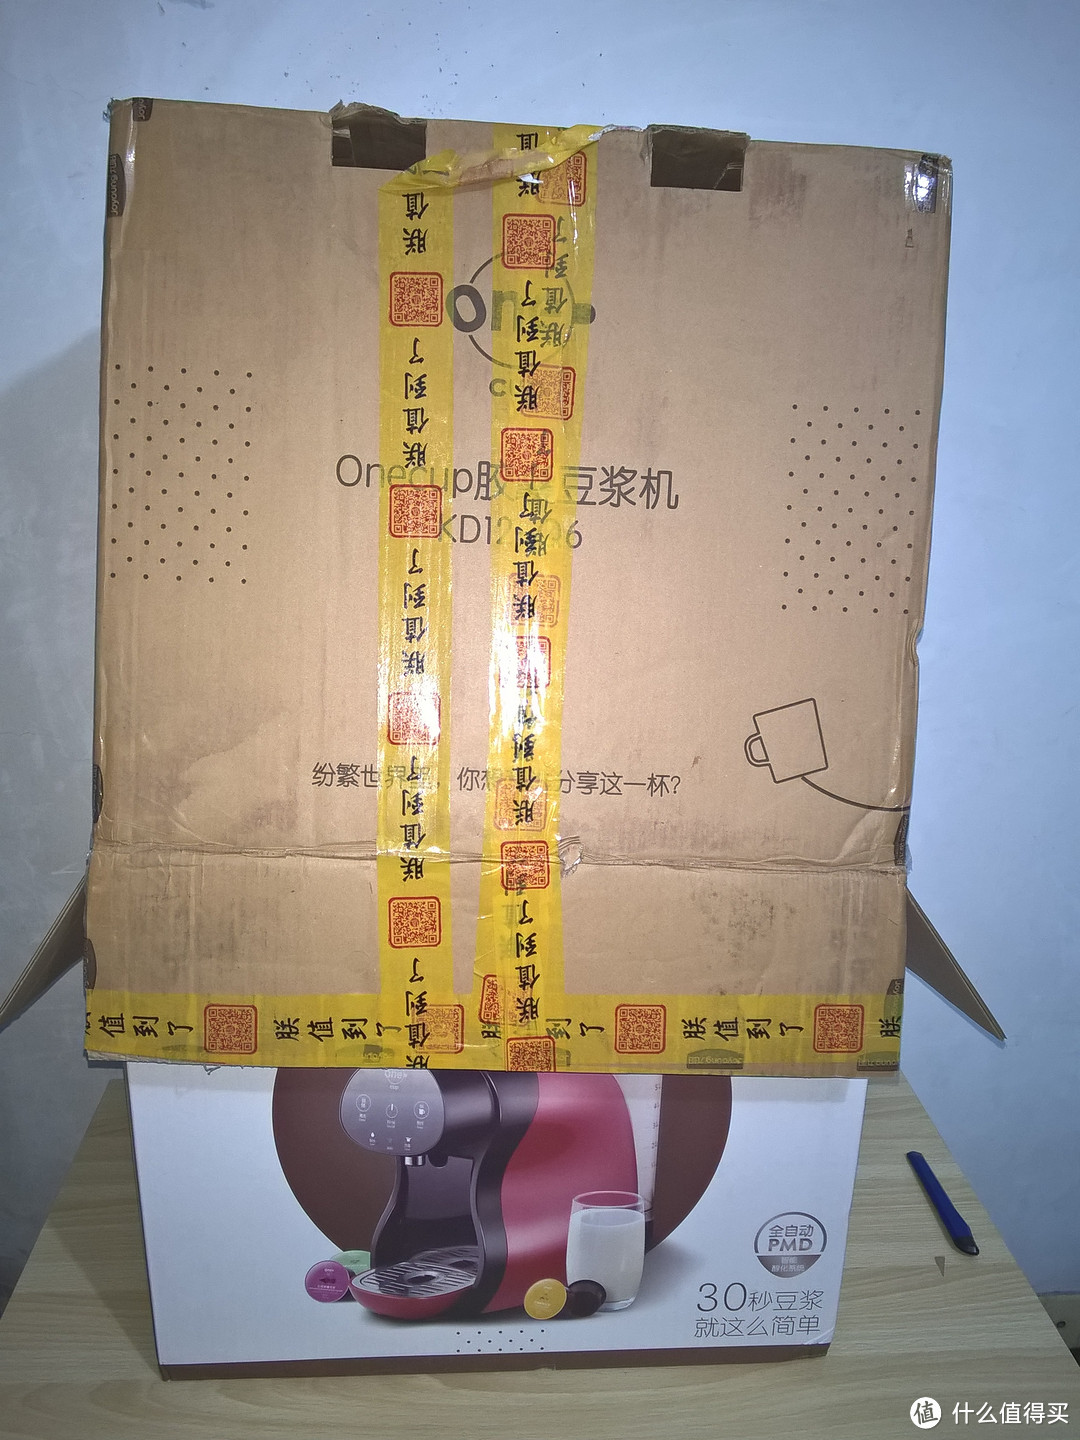 贩卖生活方式，喝豆浆的潮范 ——九阳Onecup Q6胶囊豆浆机